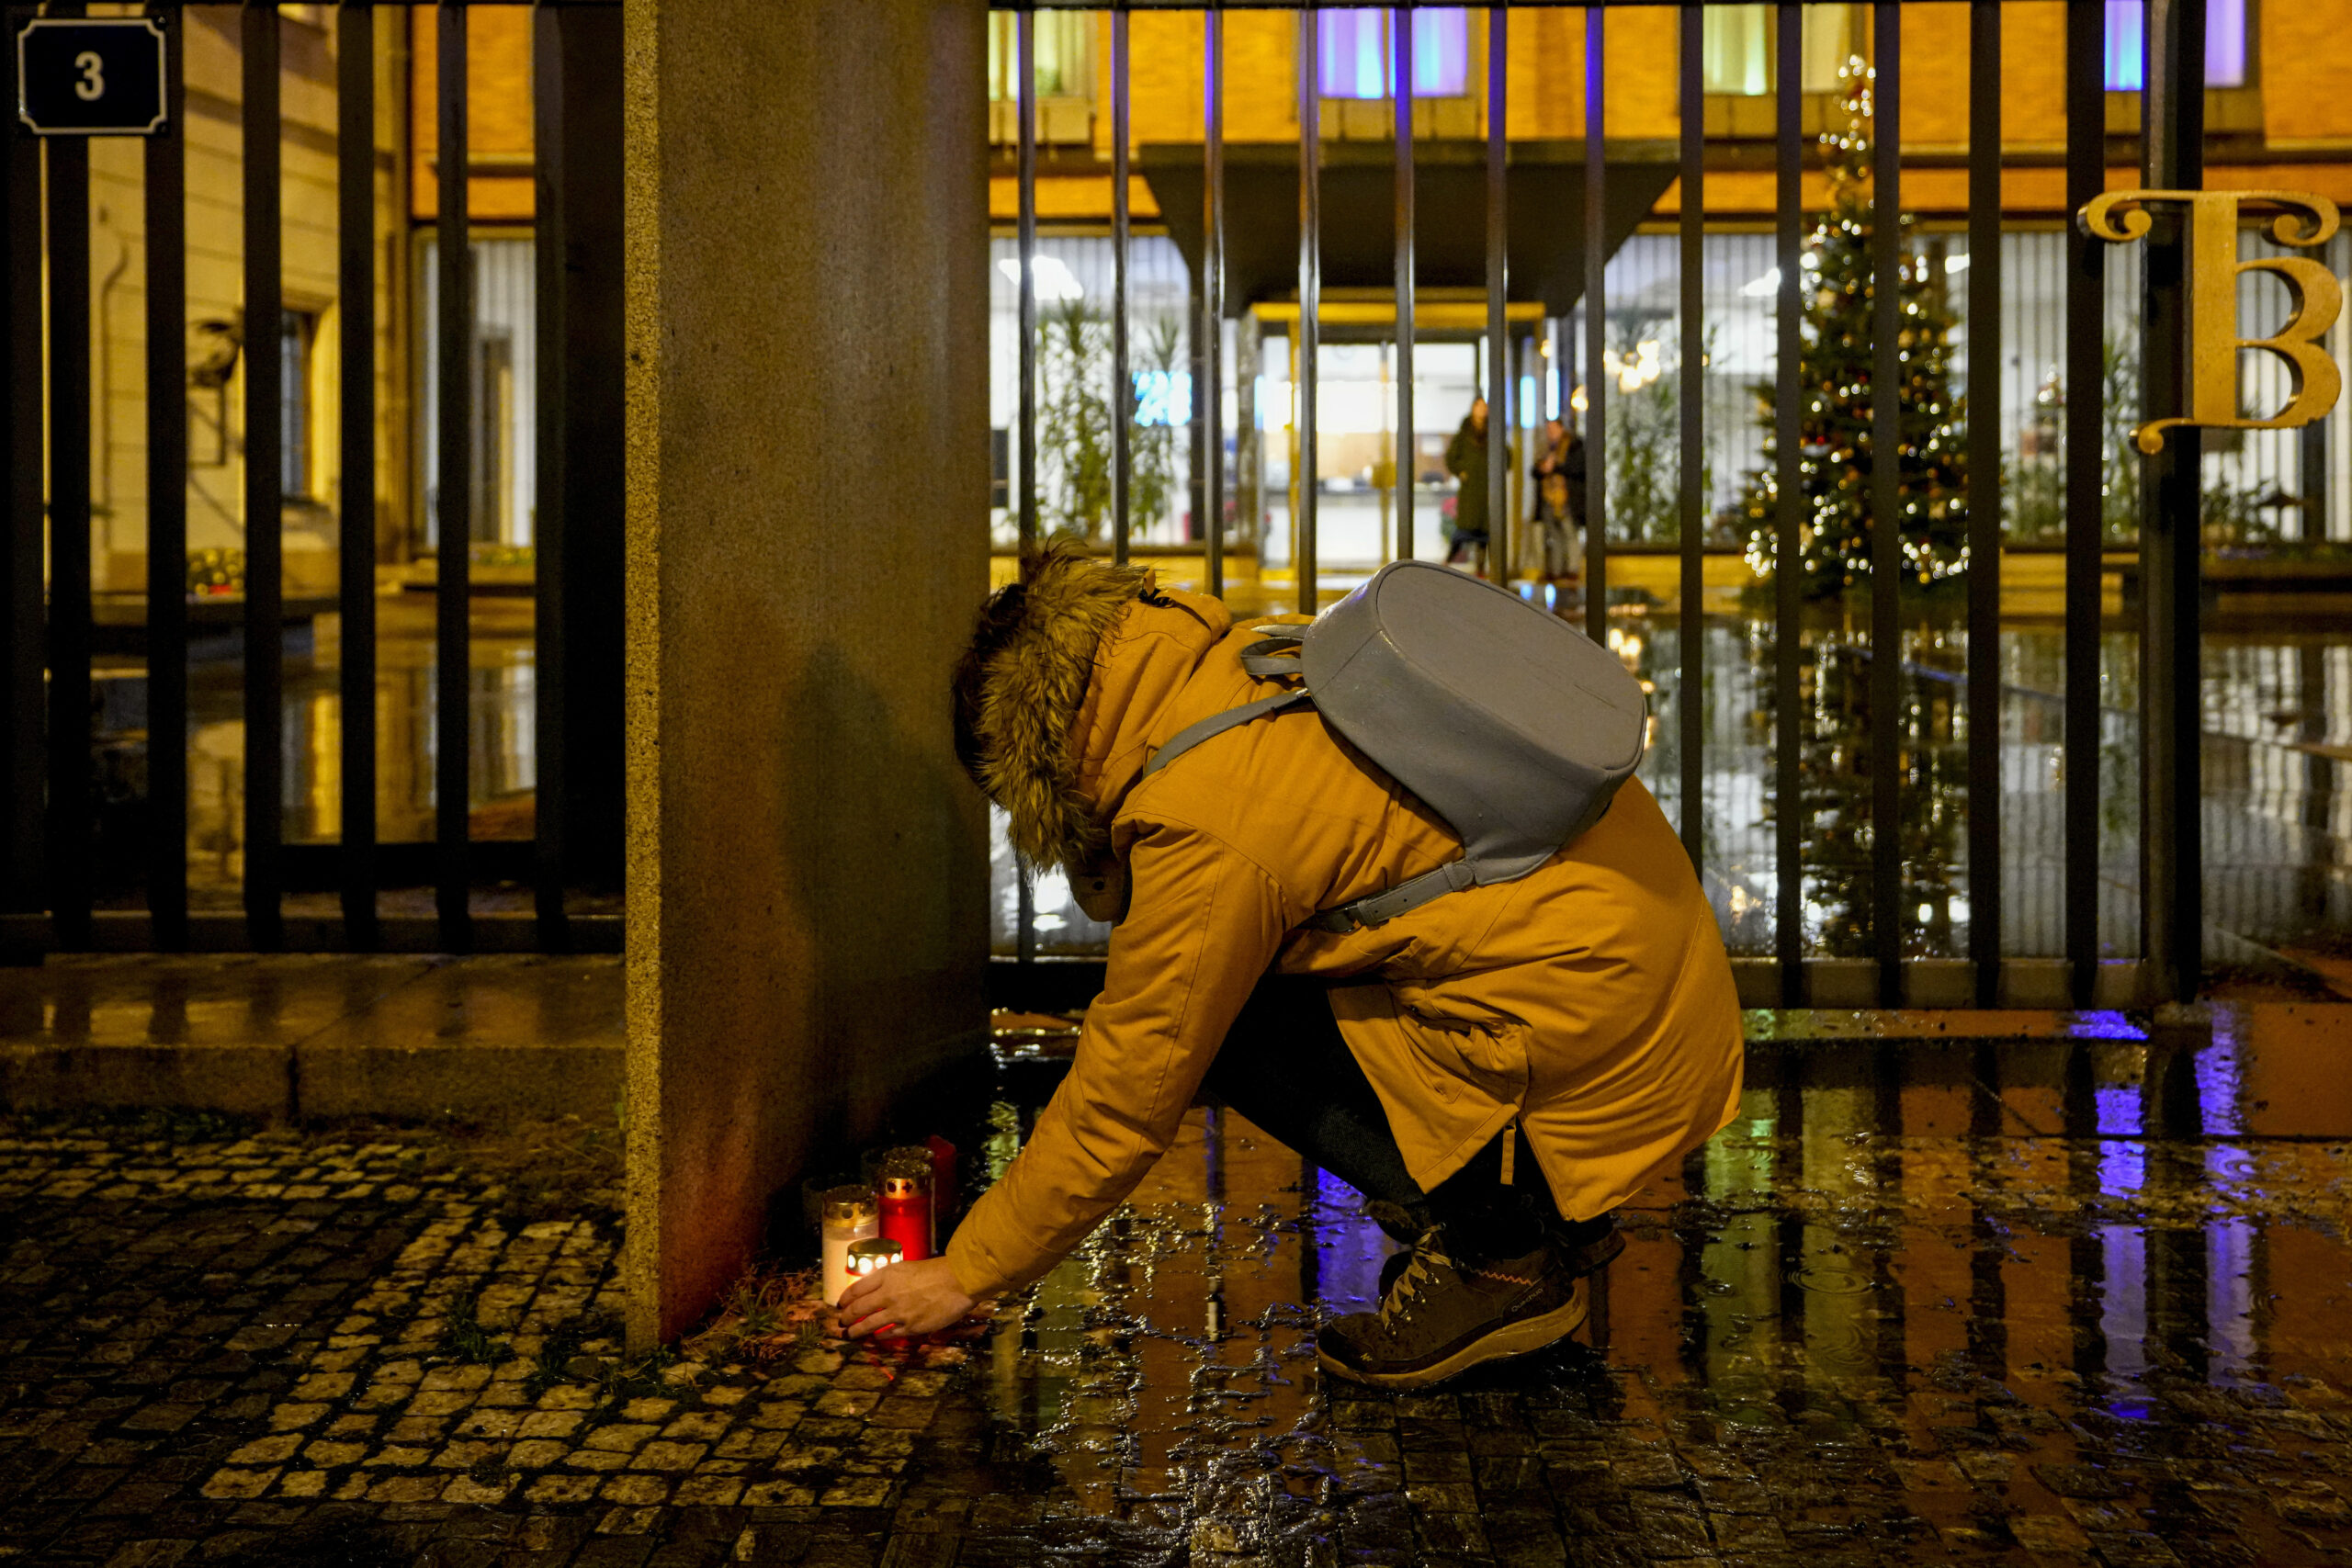 Συλλυπητήρια από τη Γερμανία για τα θύματα από την επίθεση στο πανεπιστήμιο της Πράγας